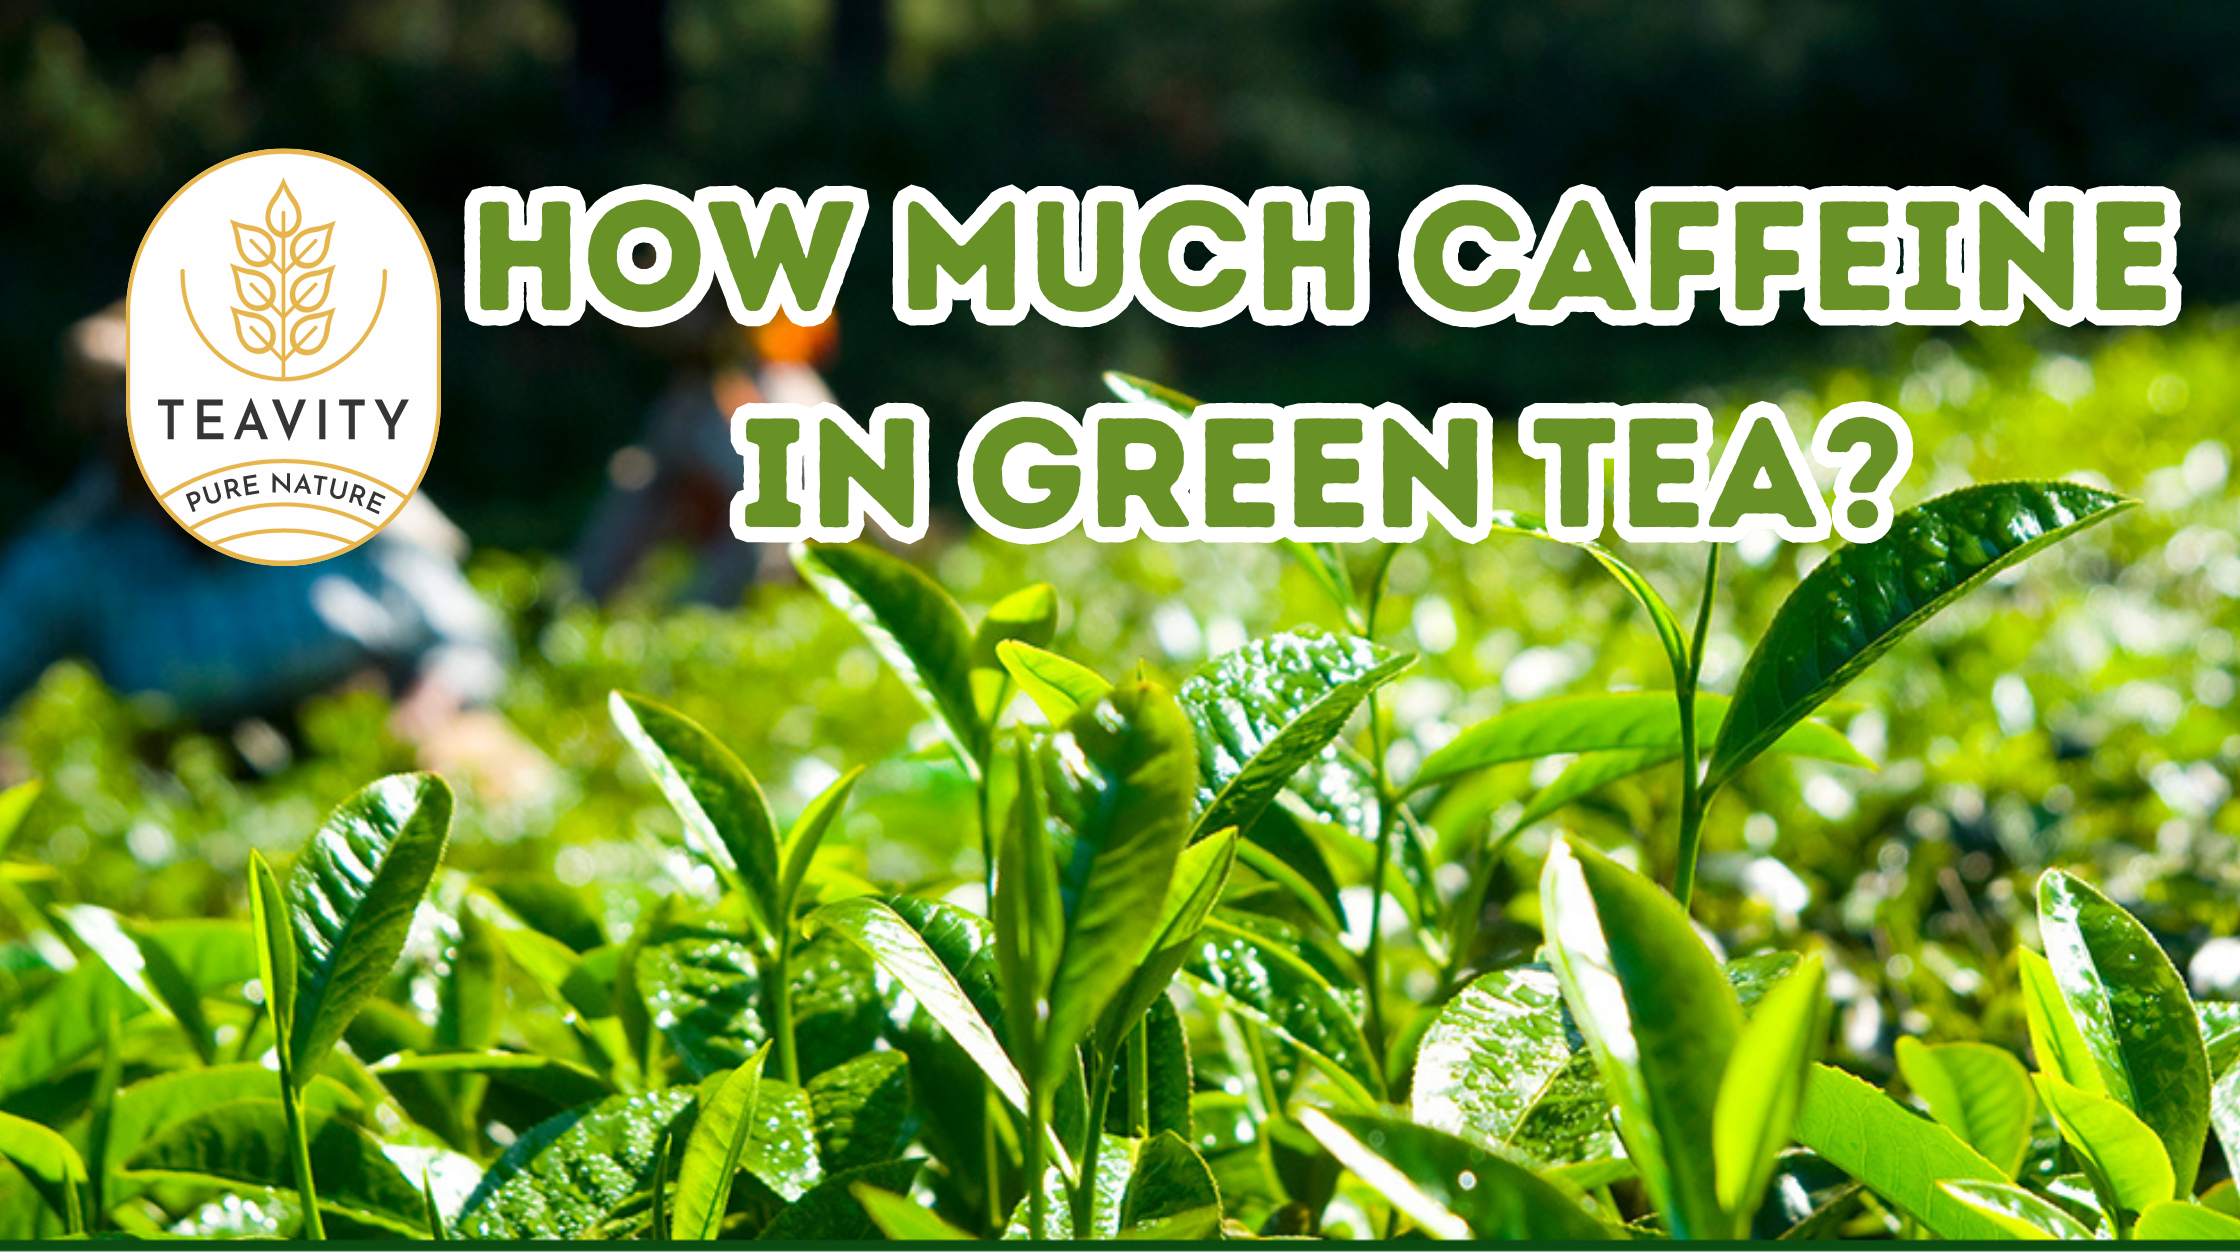 How Much Caffeine in Green Tea?